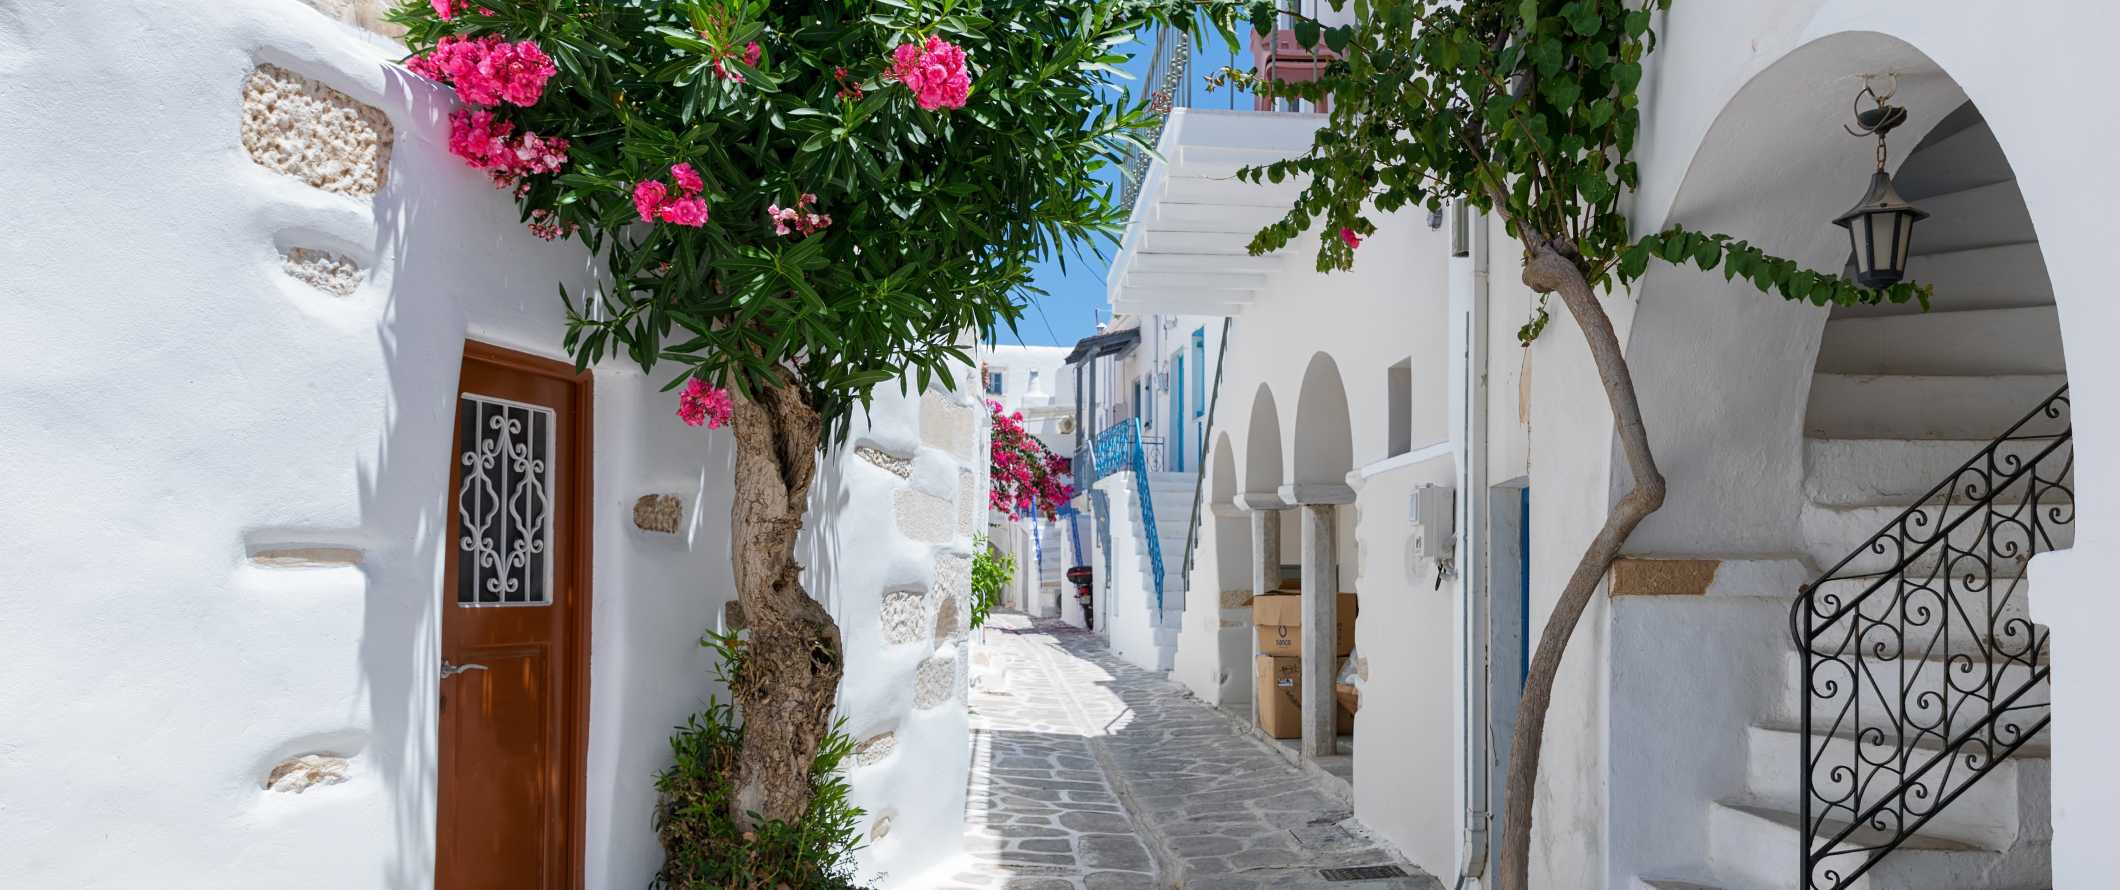 Uma rua ladeada de pedras com casas brancas em ambos os lados na ilha de Santorini, na Grécia.